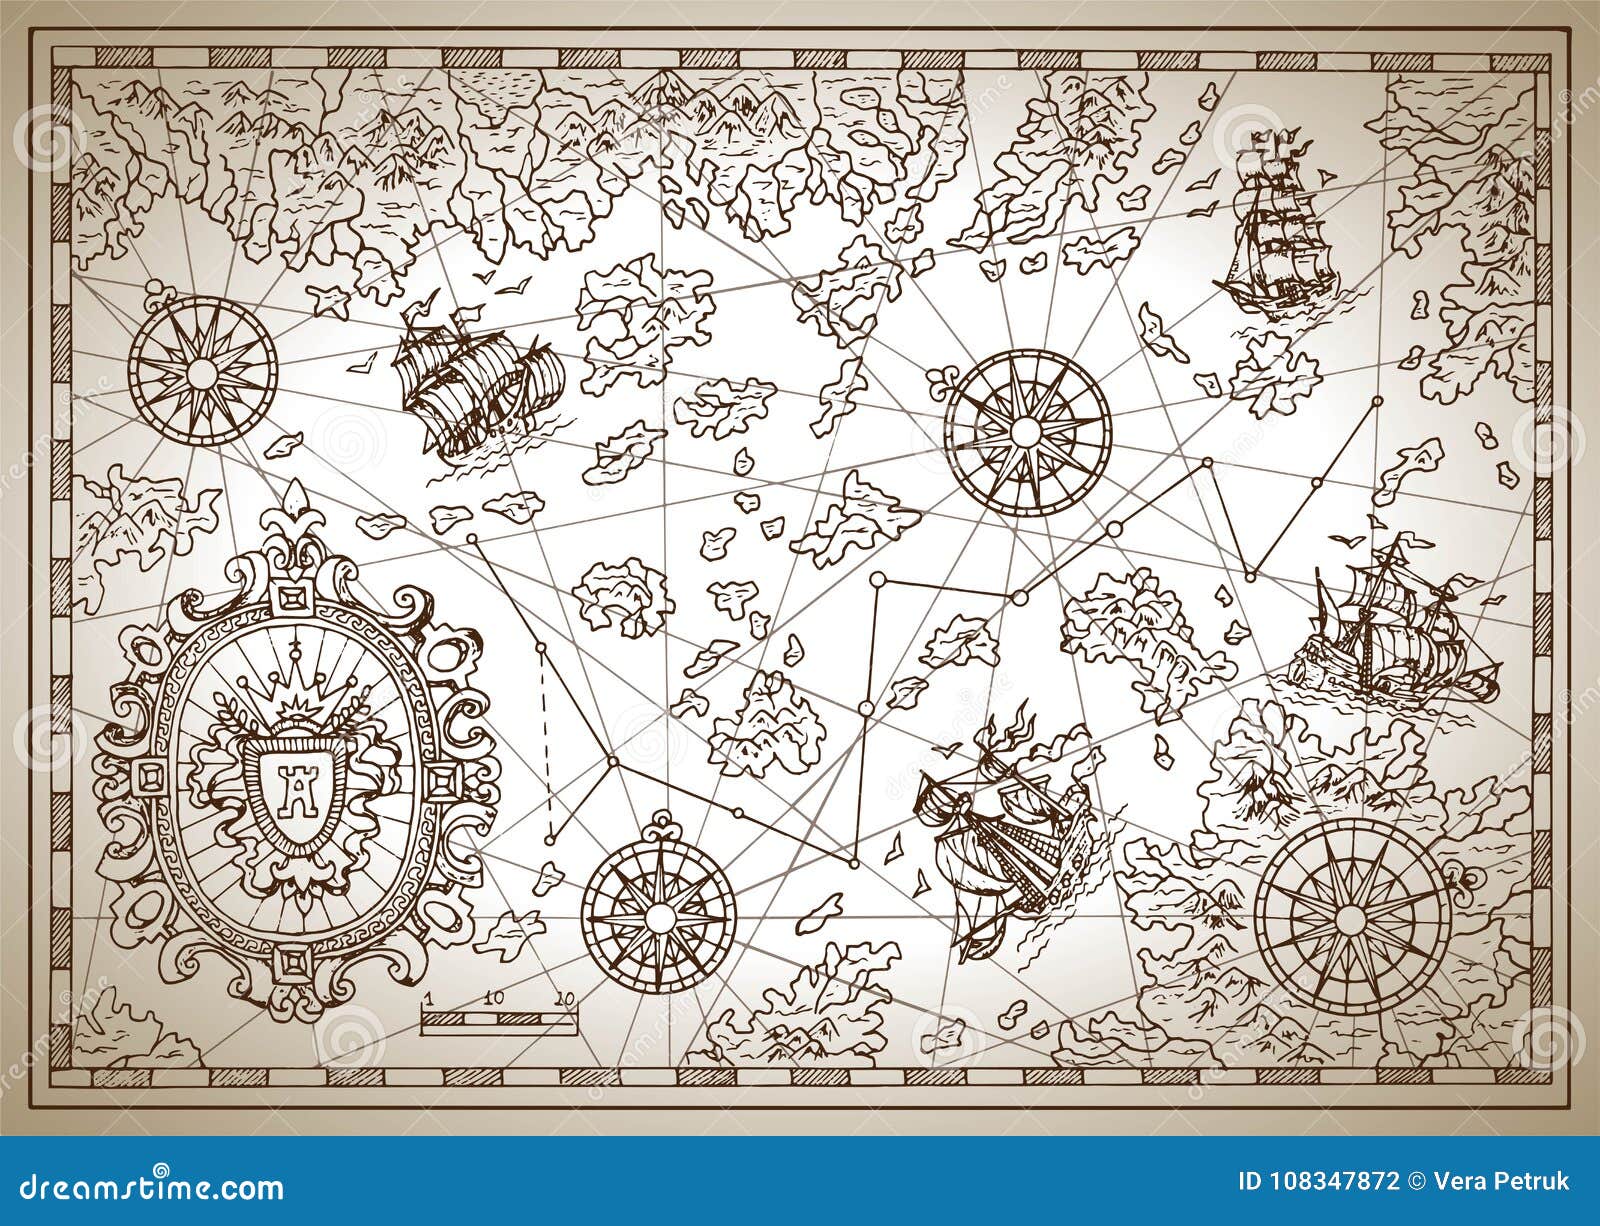 Графика для печати а4. Старинные карты кладов. Старые пиратские карты. Пиратская карта. Старинные морские карты.